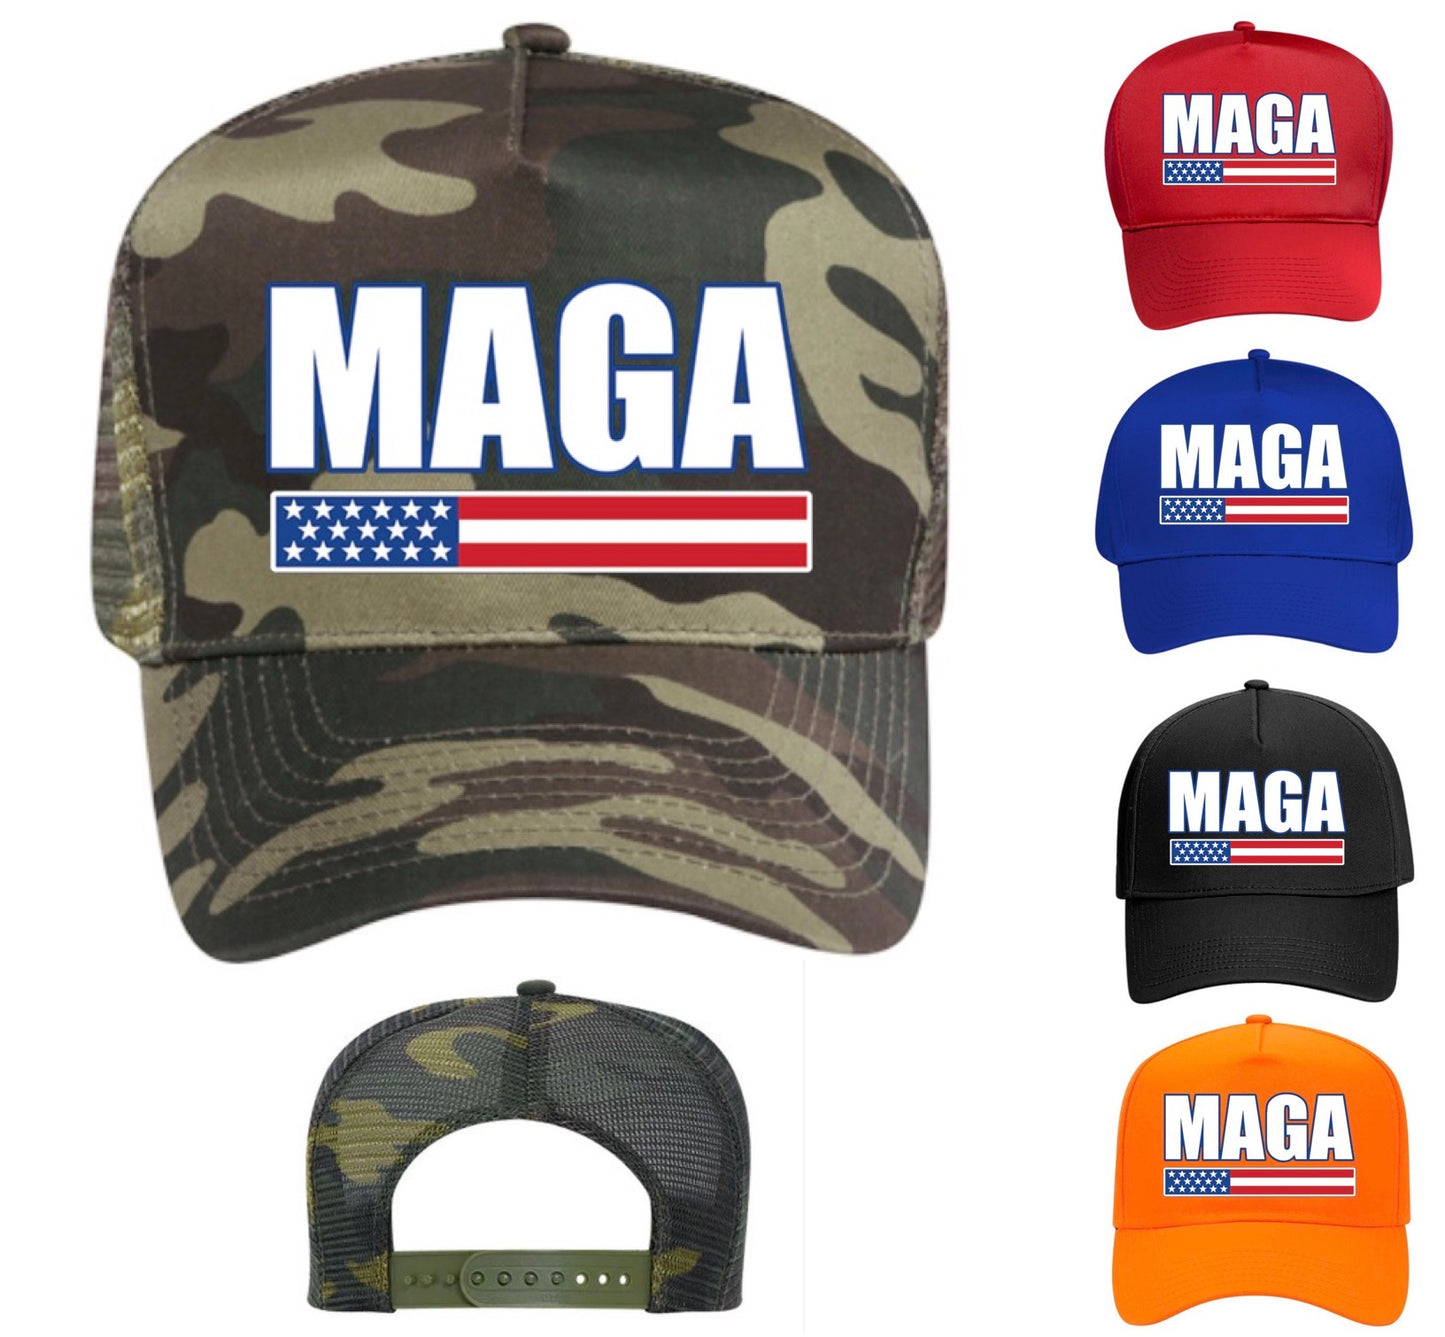 Buy 1 Get 1 Free — MAGA Hat